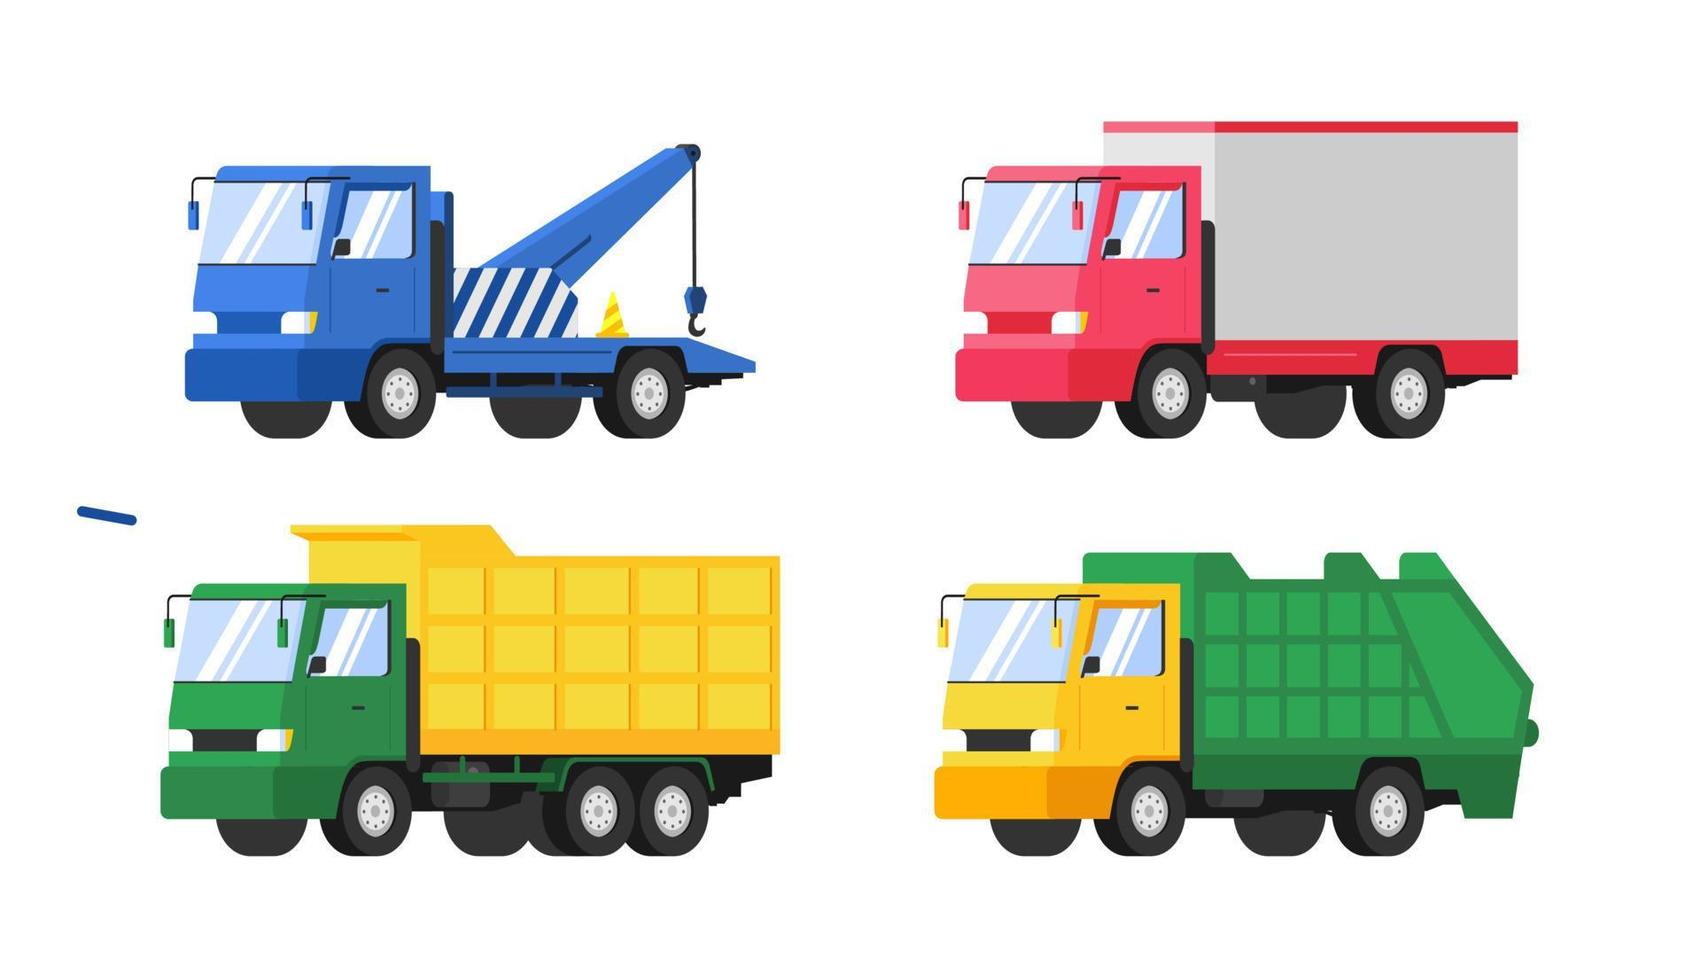 conjunto de camiones pesados. ilustración de estilo plano vectorial vector